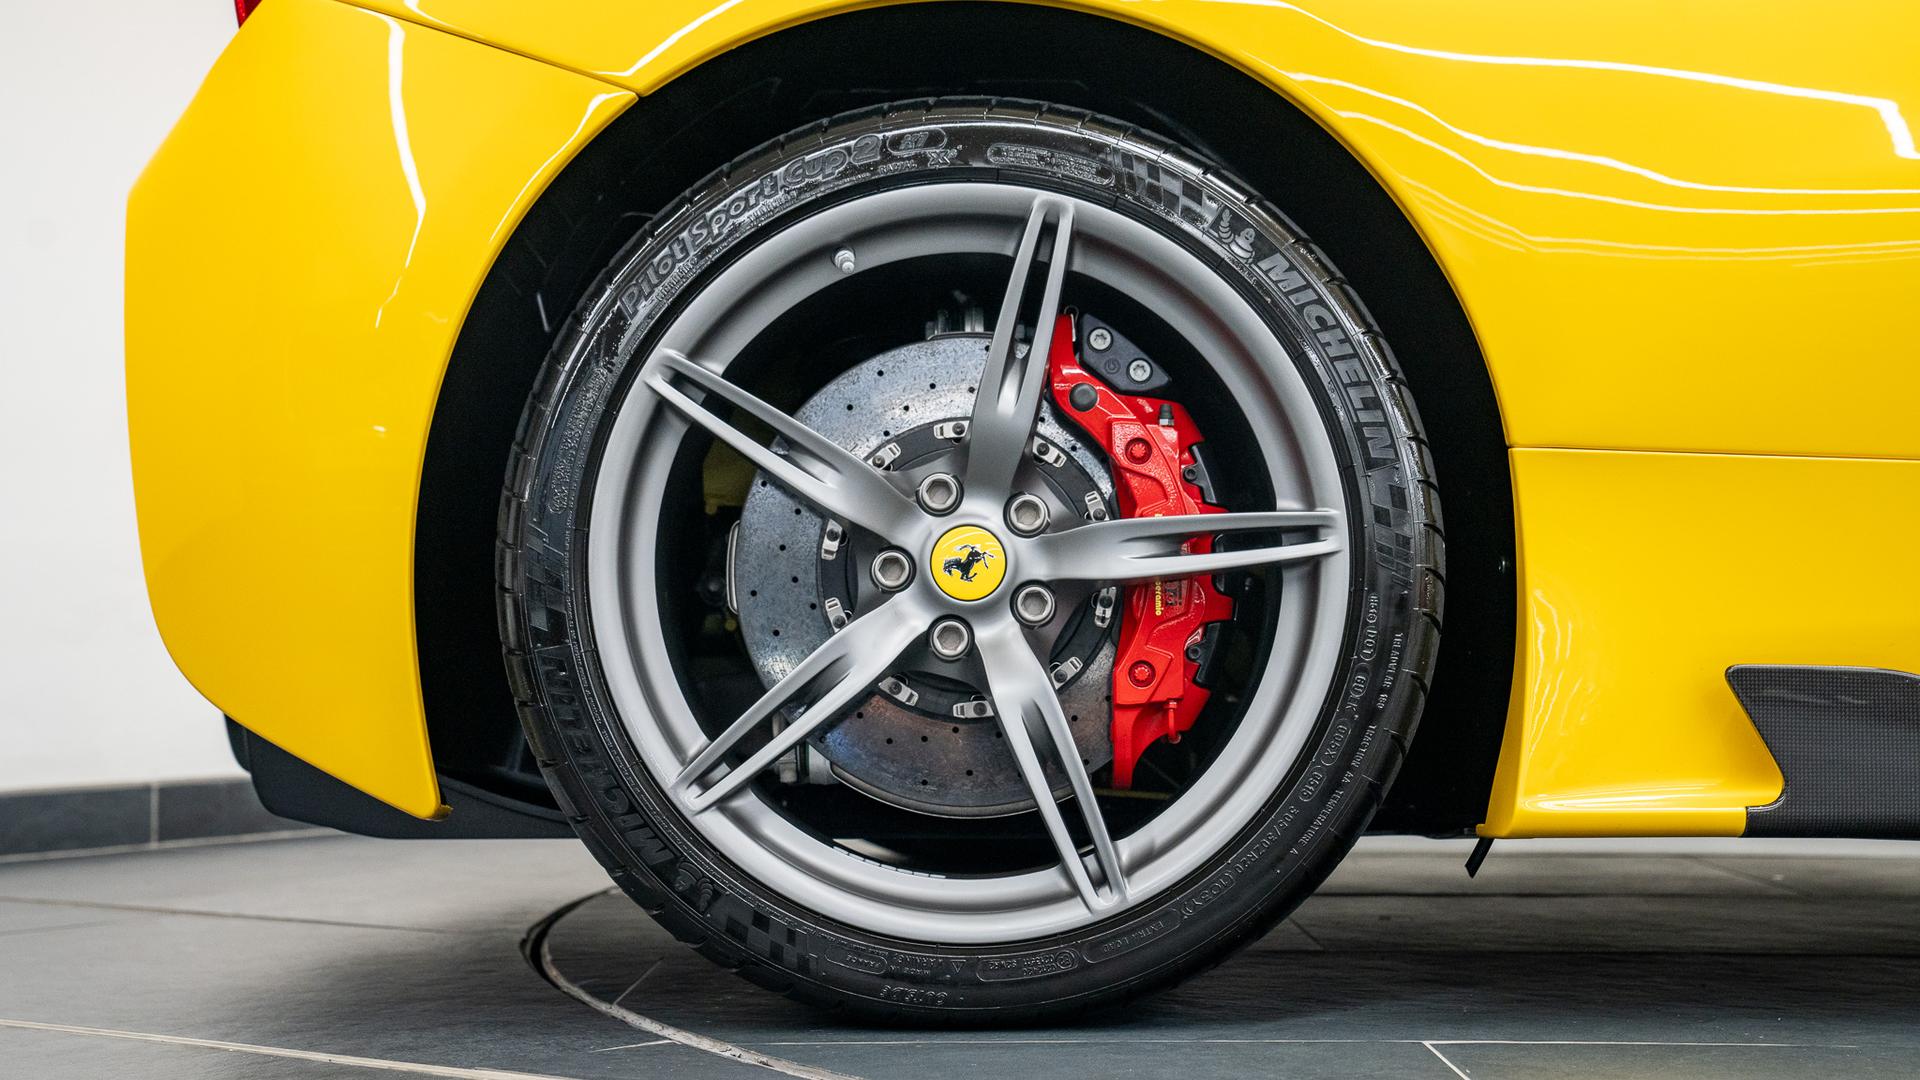 Ferrari 458 Photo b140f147-1817-43f5-9385-c71c917f2866.jpg